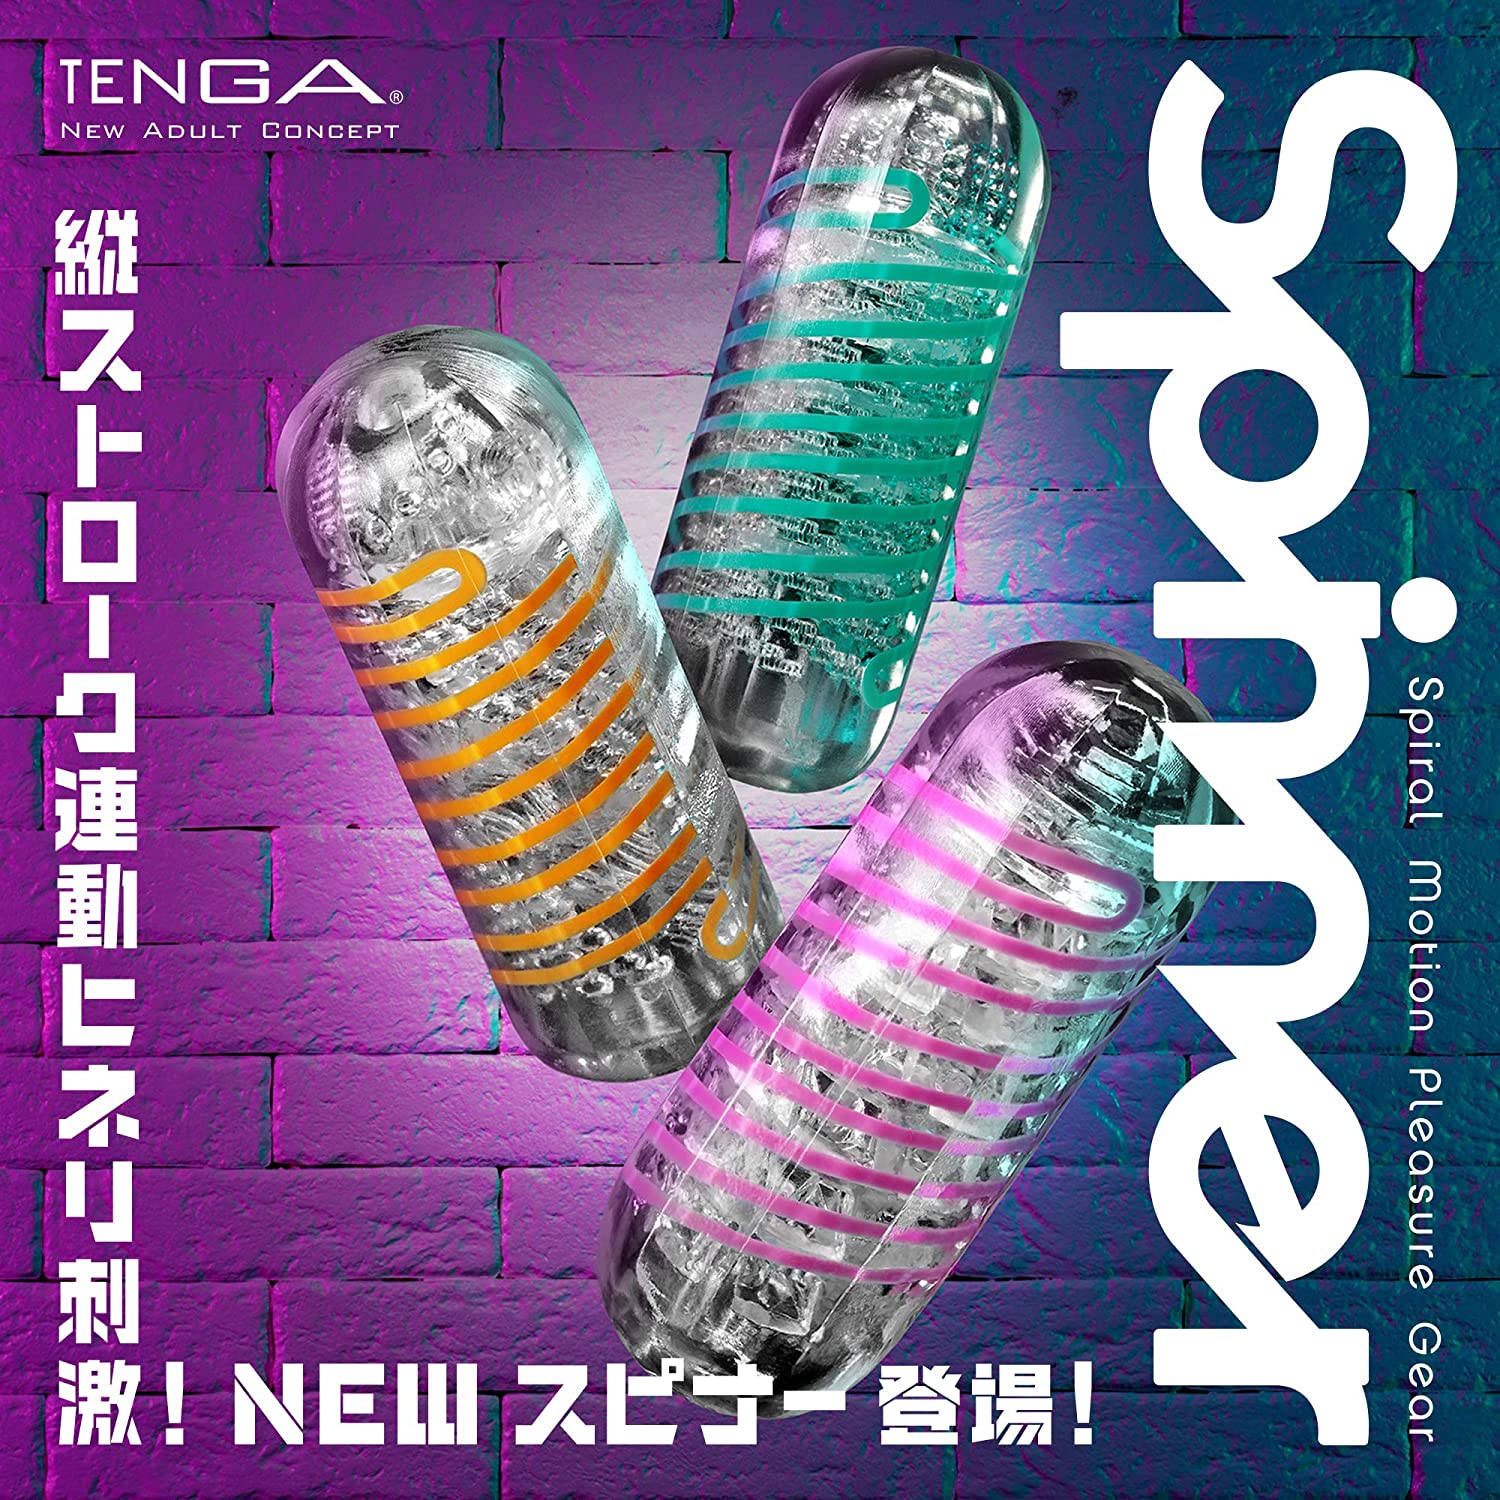 【完全自訂】TENGA Spinner 套裝-TENGA-TENGA 香港網上專門店 - 專營 TENGA 飛機杯及潤滑劑